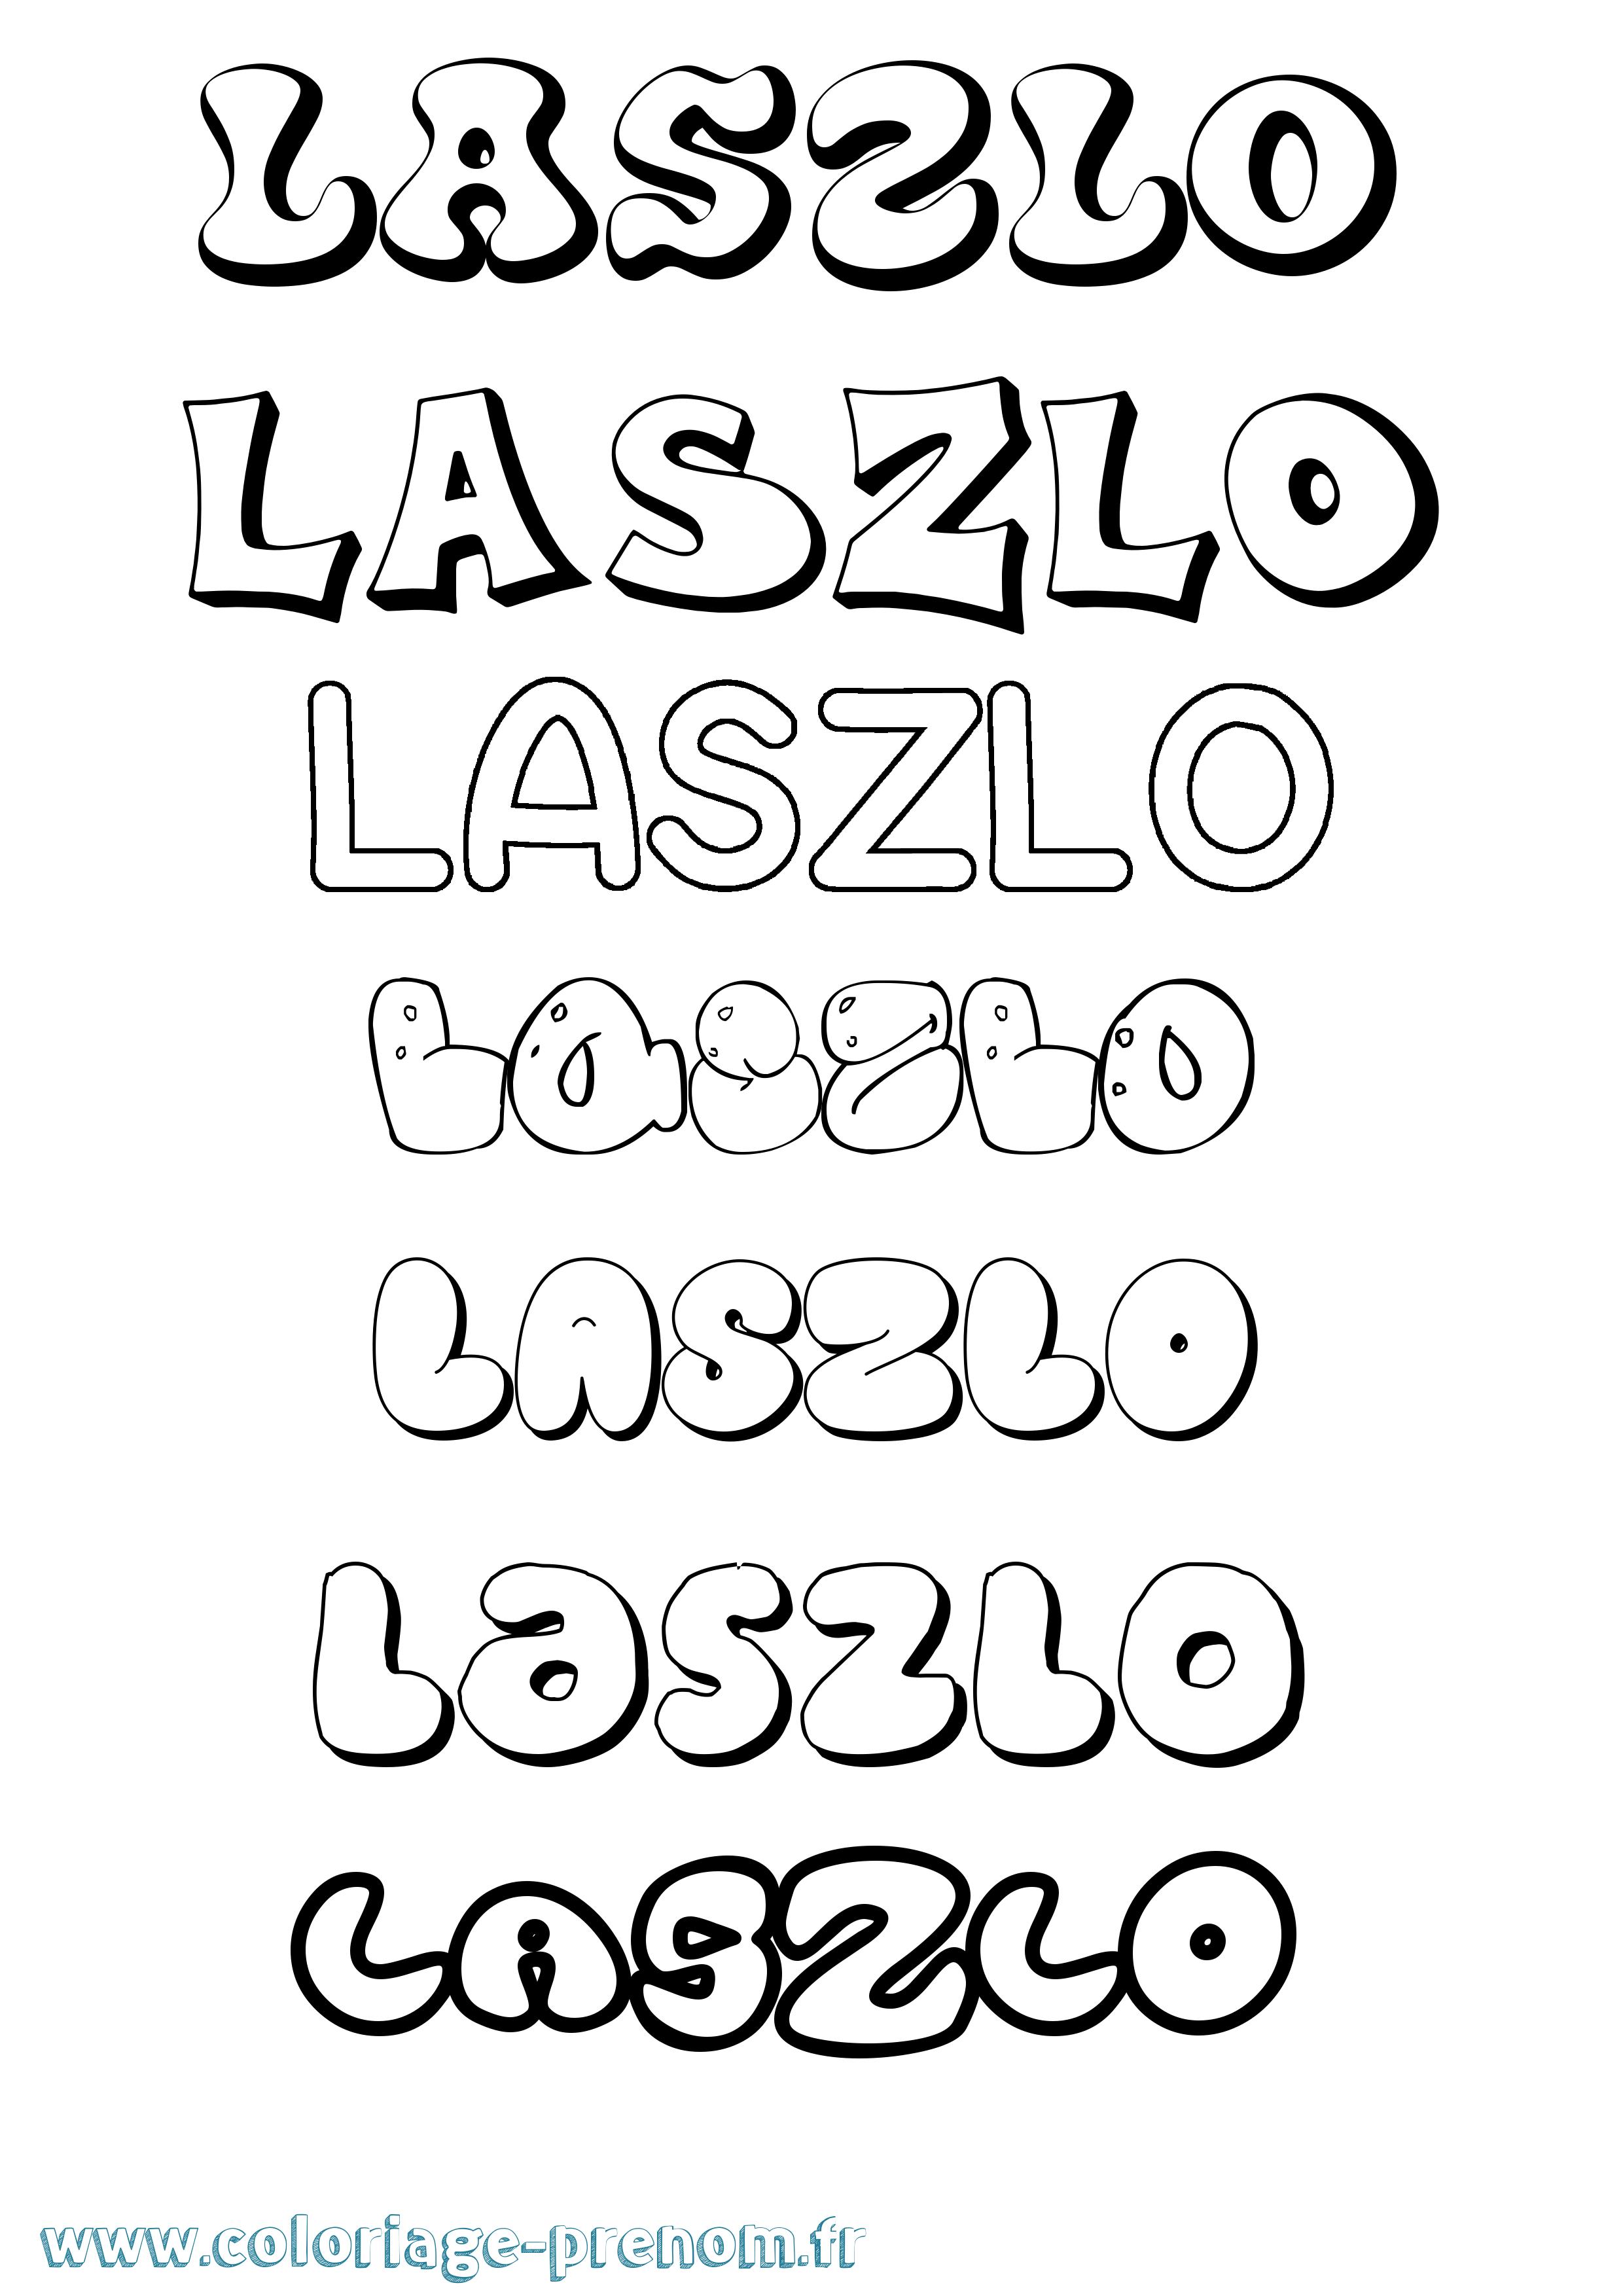 Coloriage prénom Laszlo Bubble